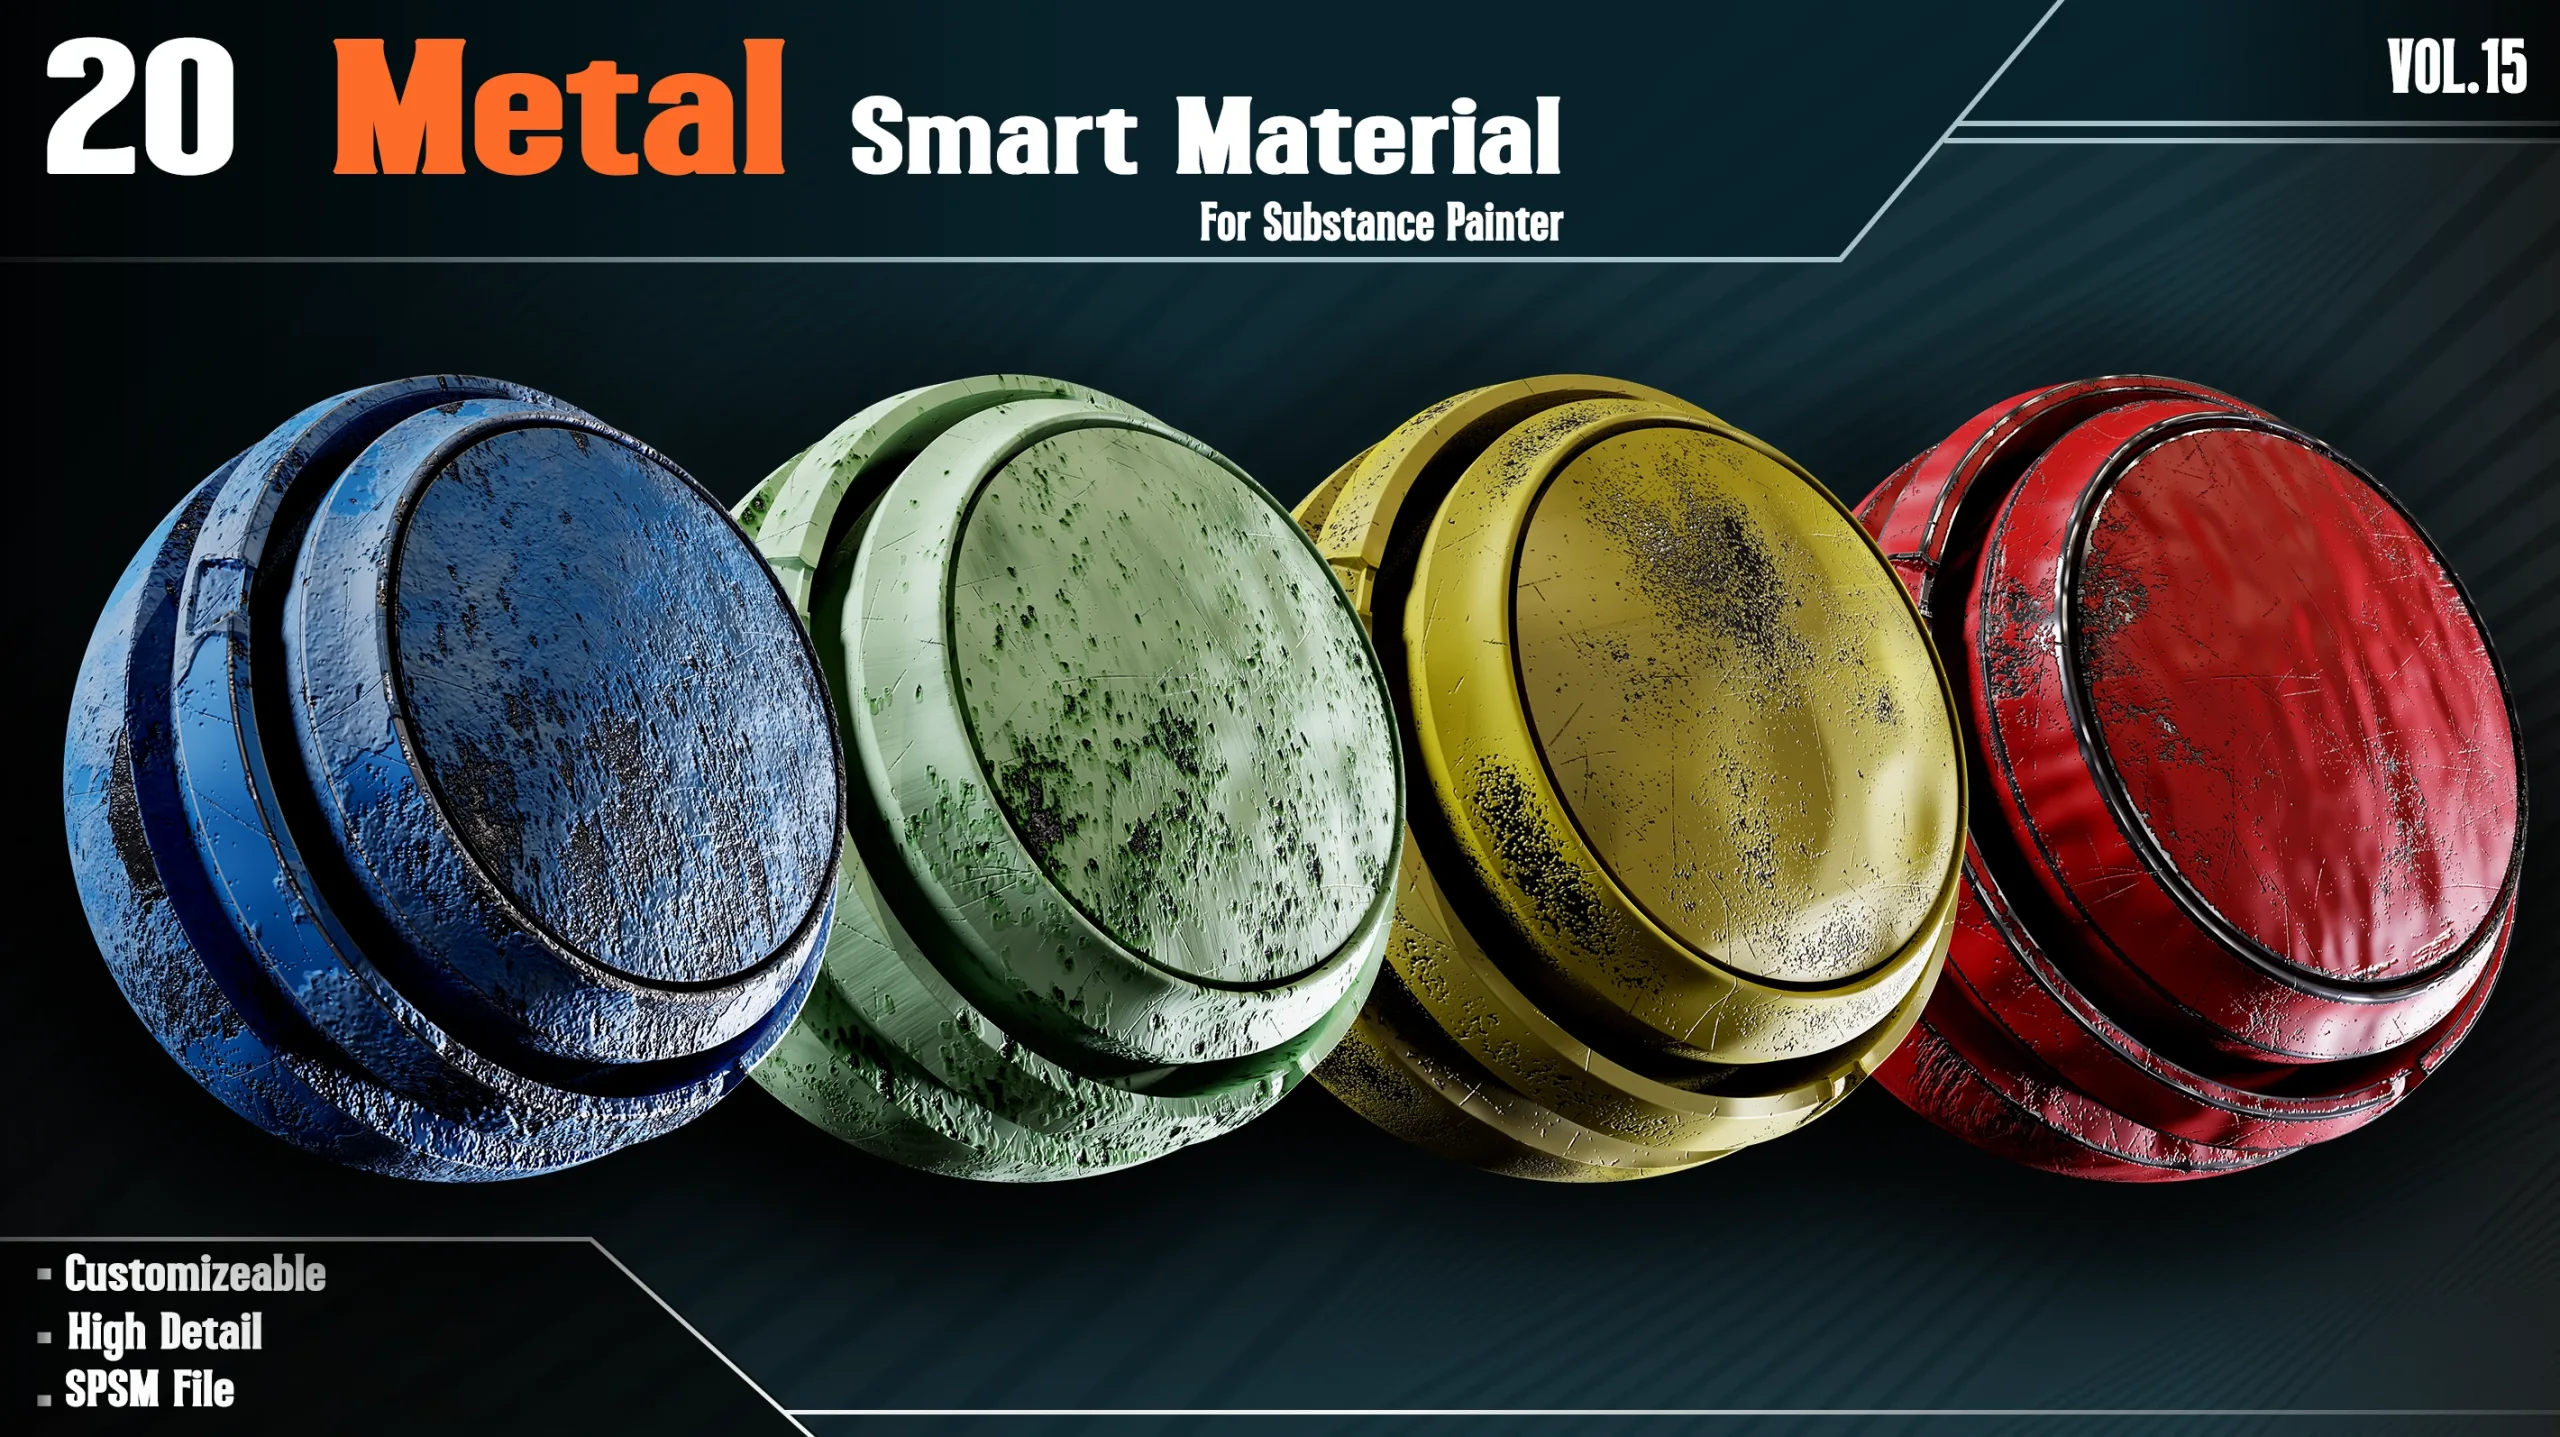 20 Metal Smart Materials - VOL.15 (spsm file+1 Free Sample)